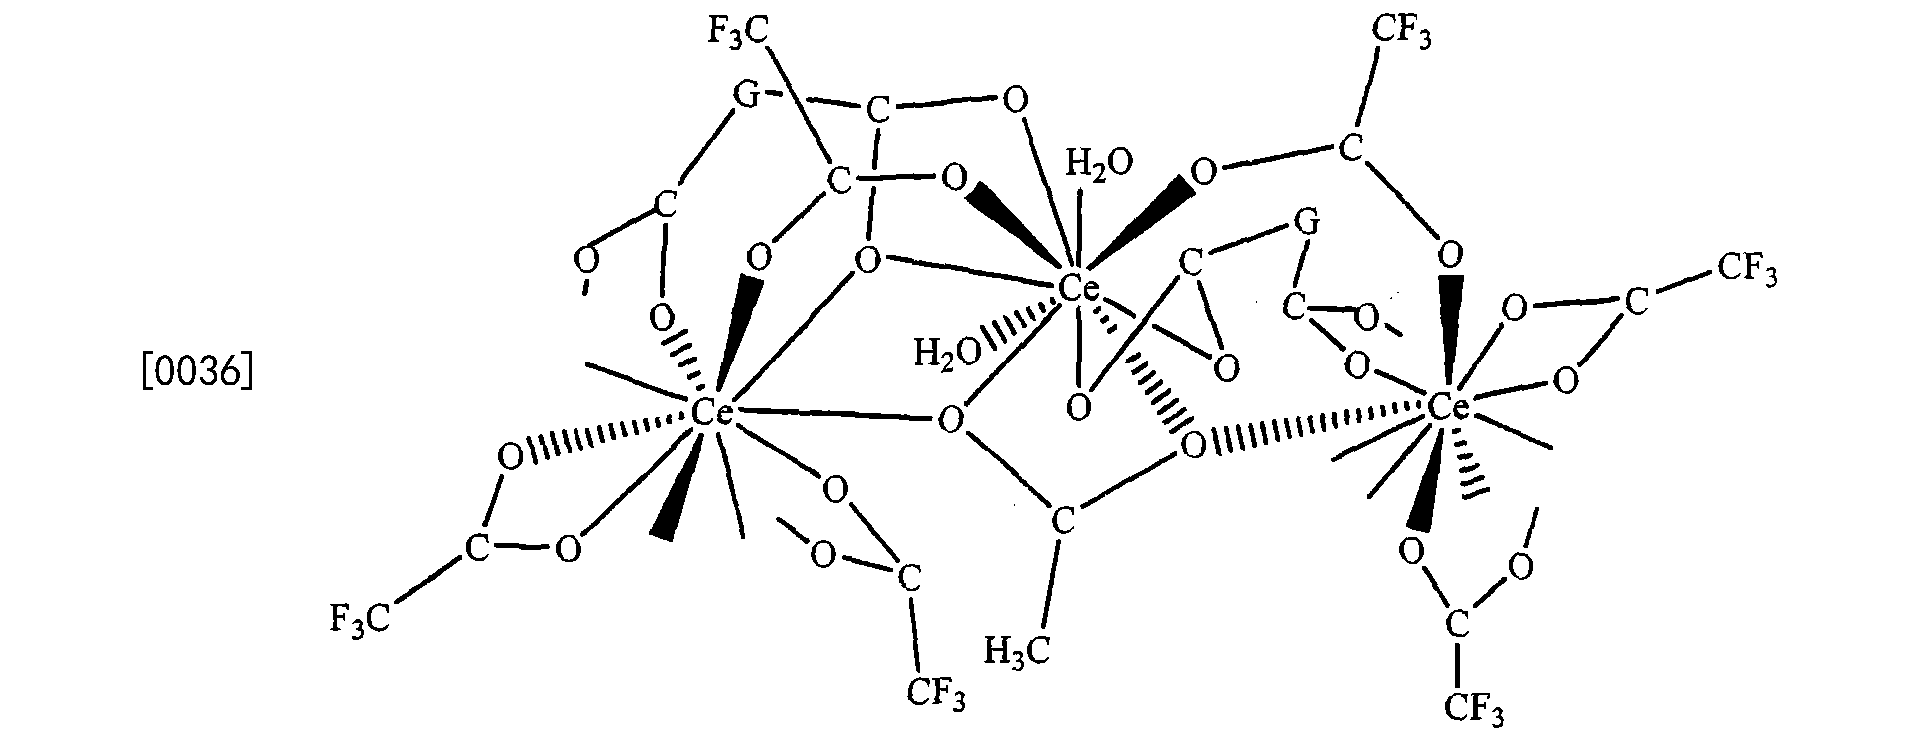 [0035] 该分子结构中包含四个重复的基本单元,其基本单元结构式如下